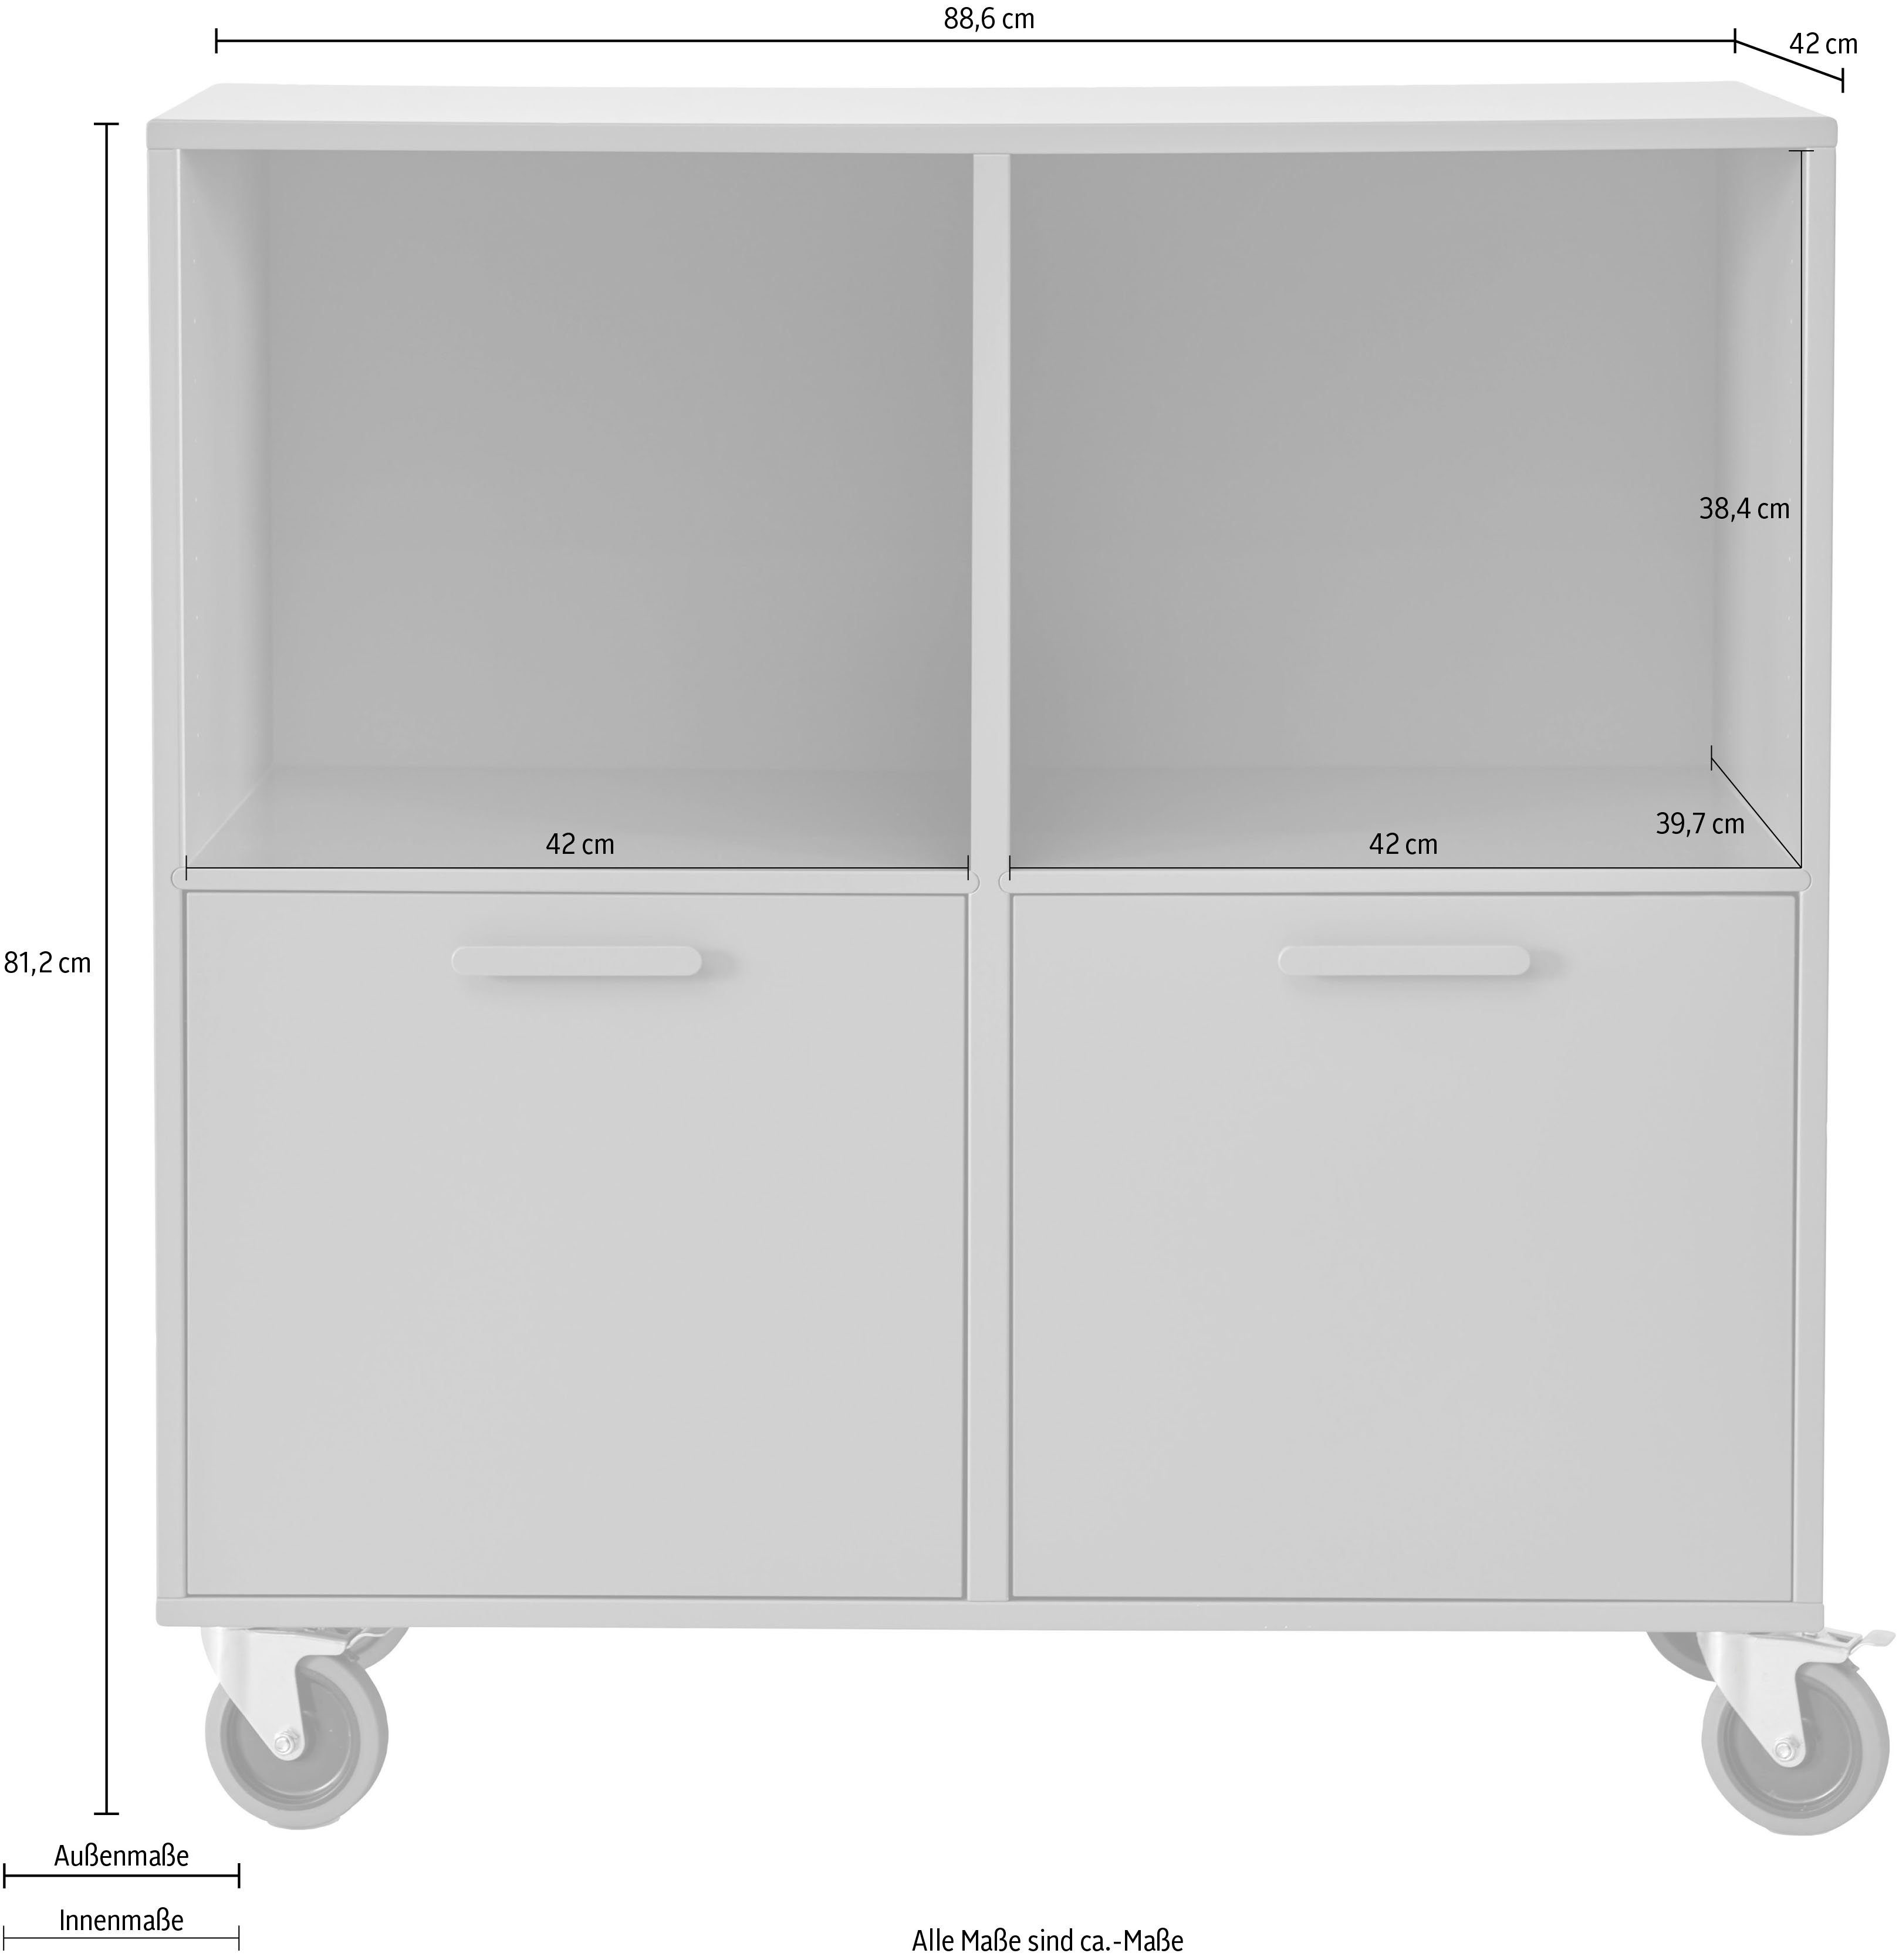 Hammel und by Breite mit | Terrakotta 88,6 2 Keep Furniture Regal Hammel, Türen Möbelserie Terrakotta flexible Rollen, cm,